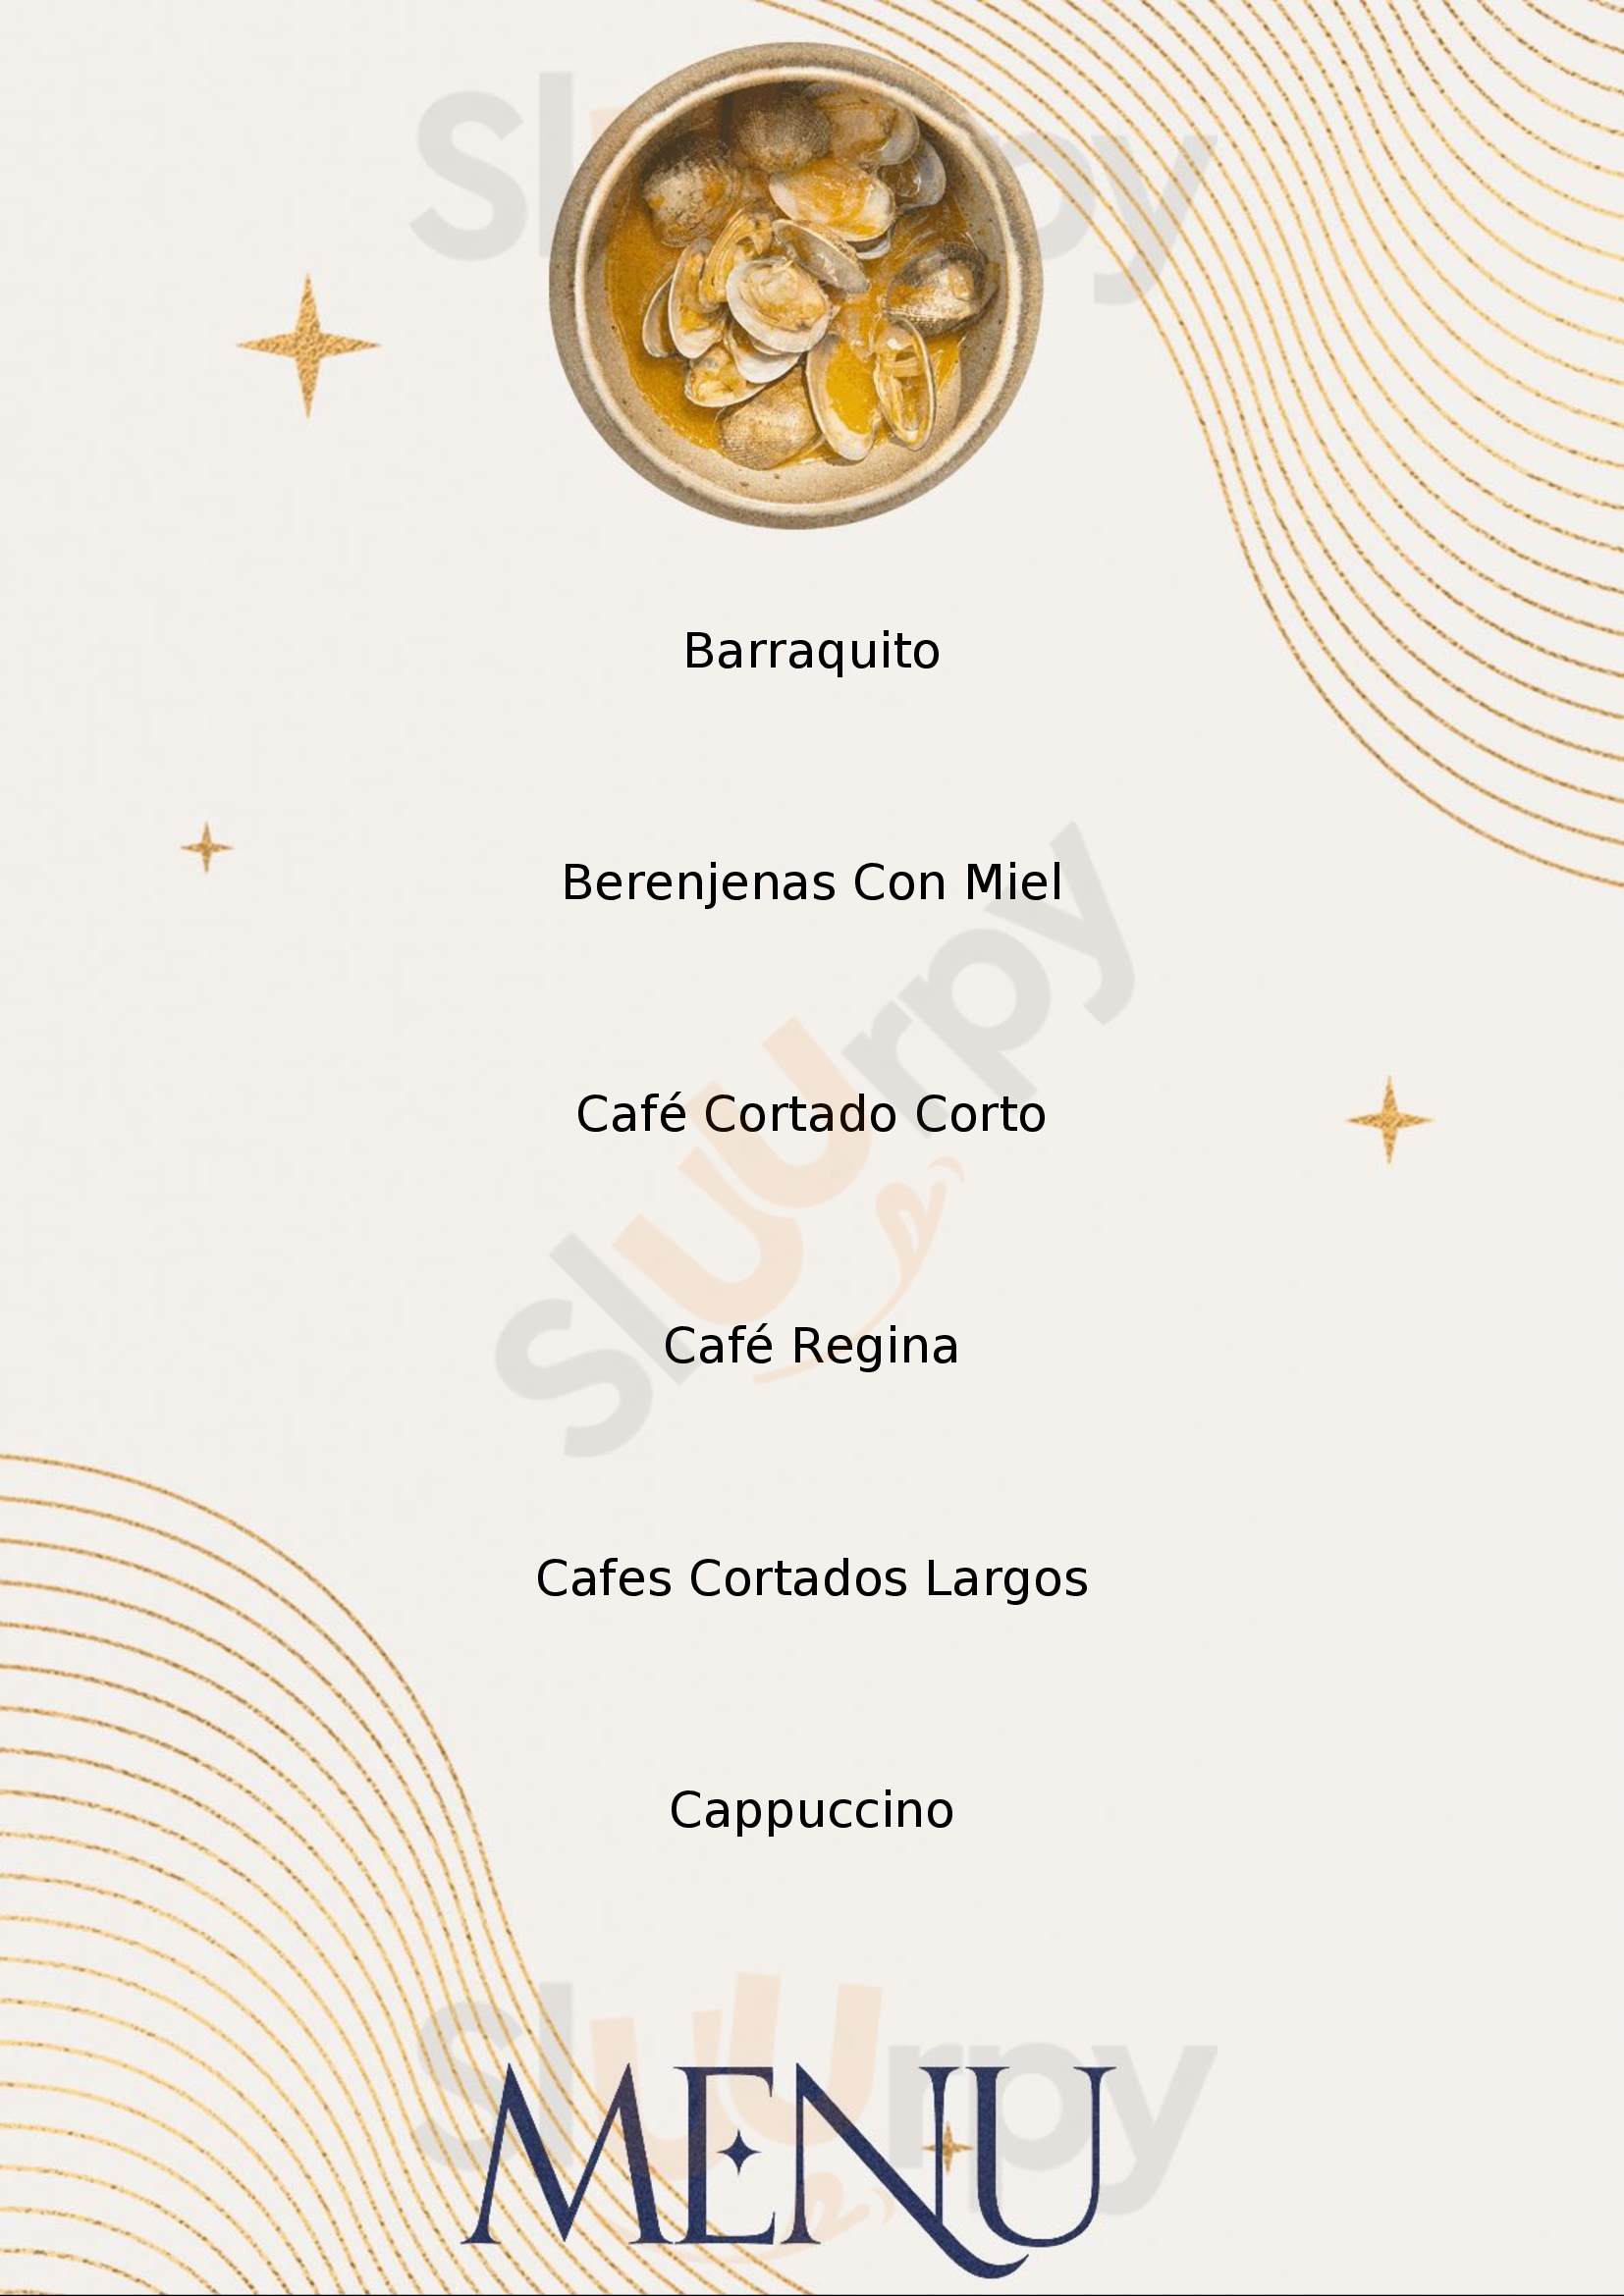 Café Regina Las Canteras Las Palmas de Gran Canaria Menu - 1